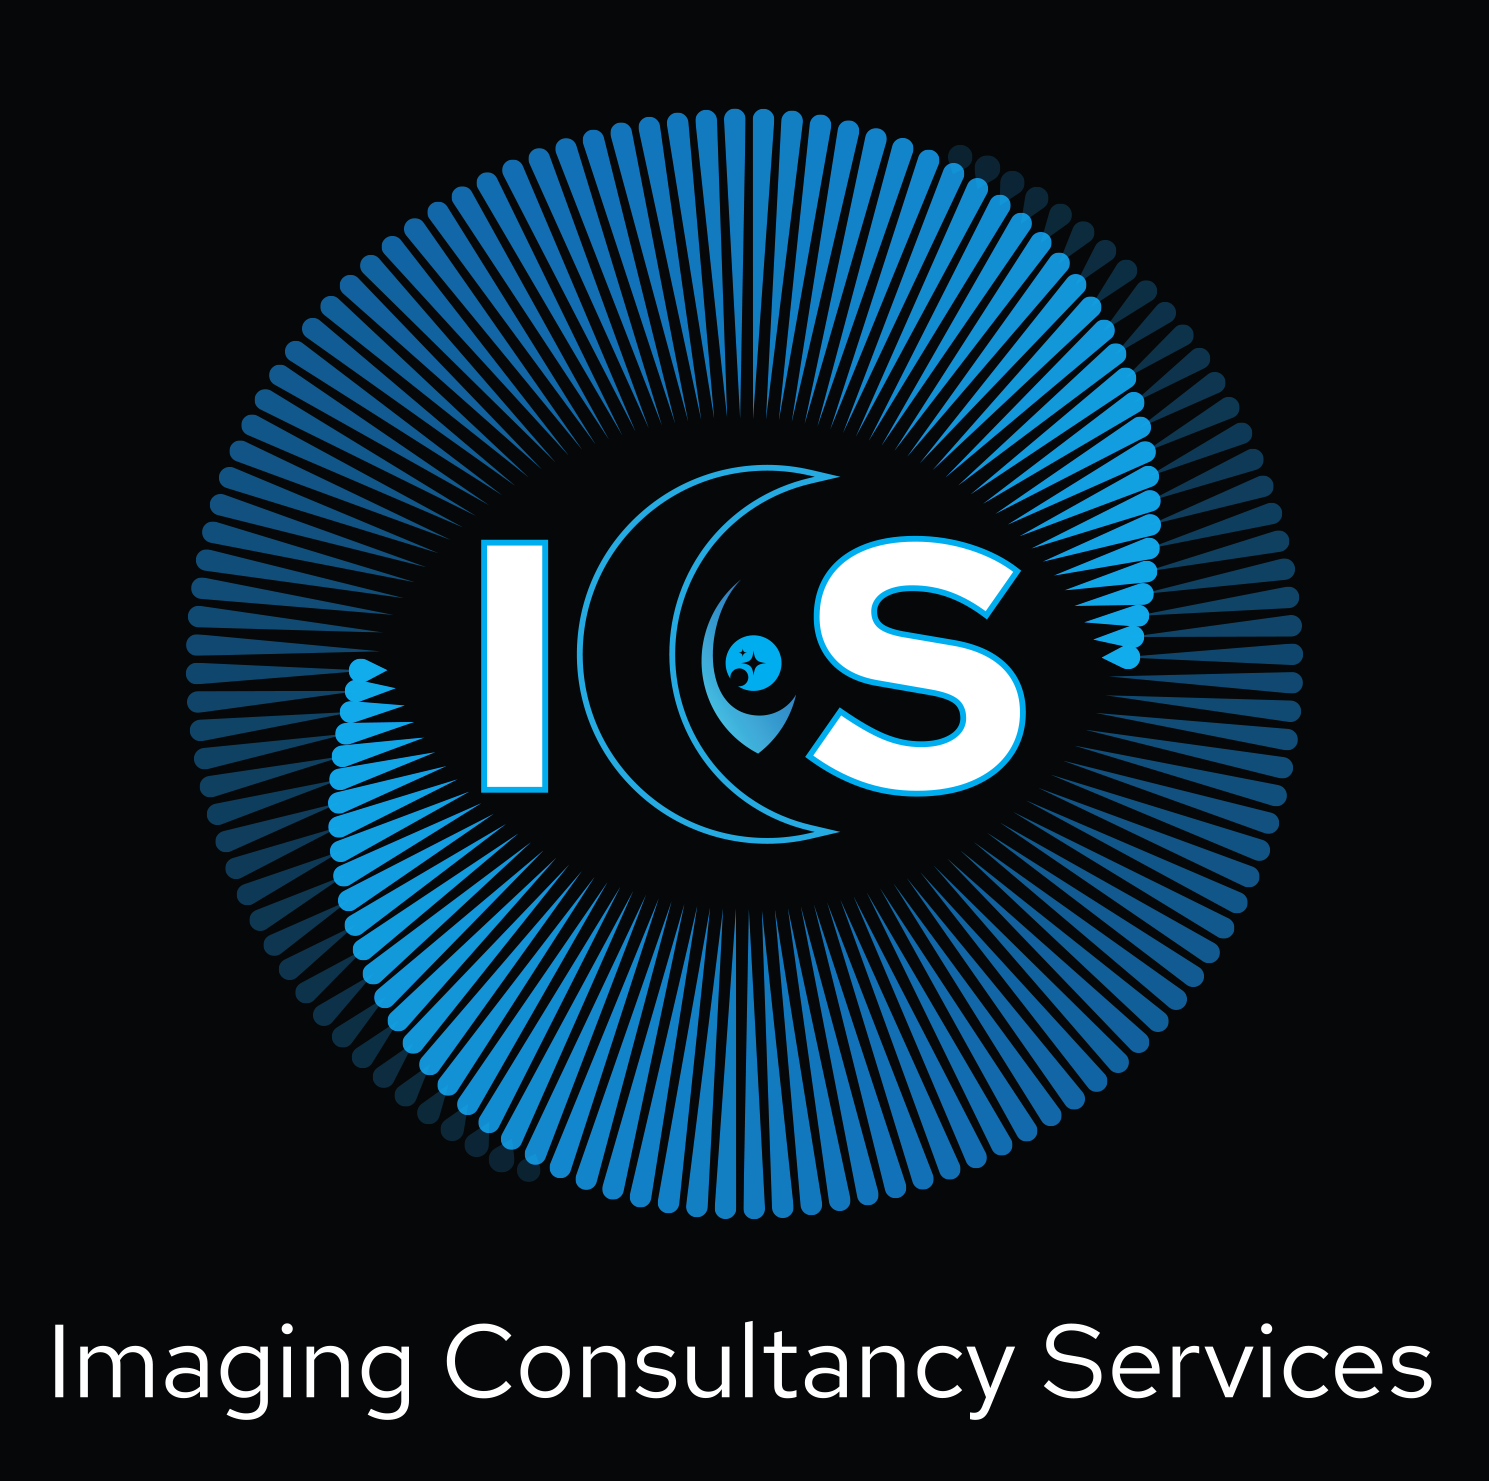 ICS Ltd